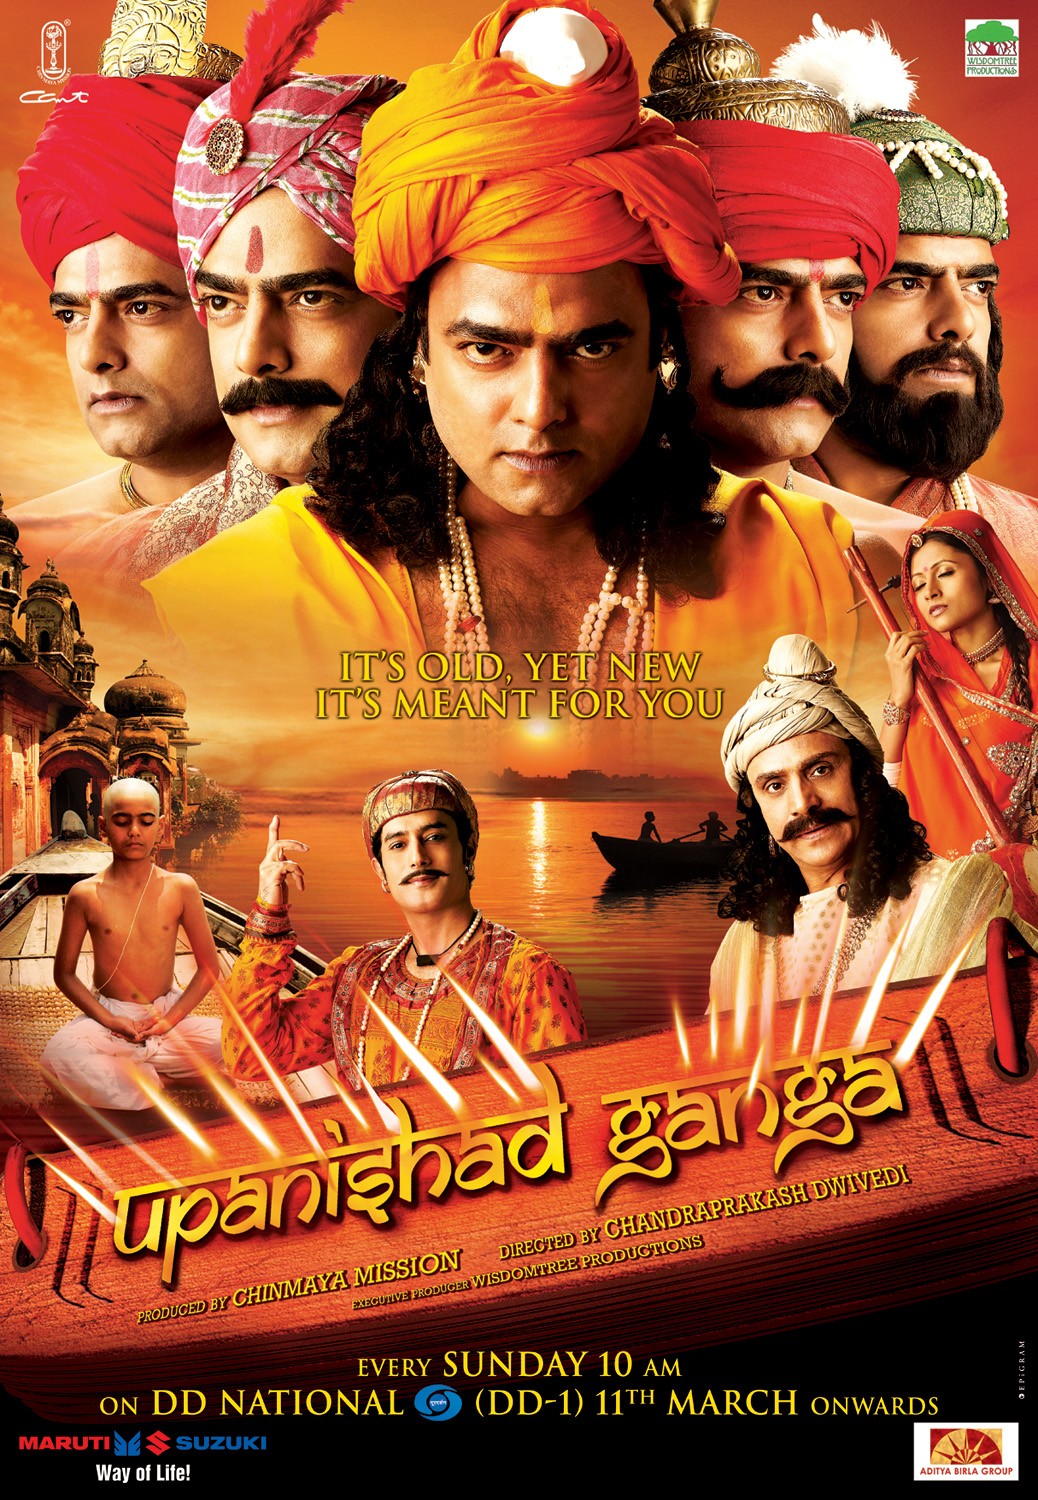 Extra Large TV Poster Image for Upanishad Ganga (#2 of 4)